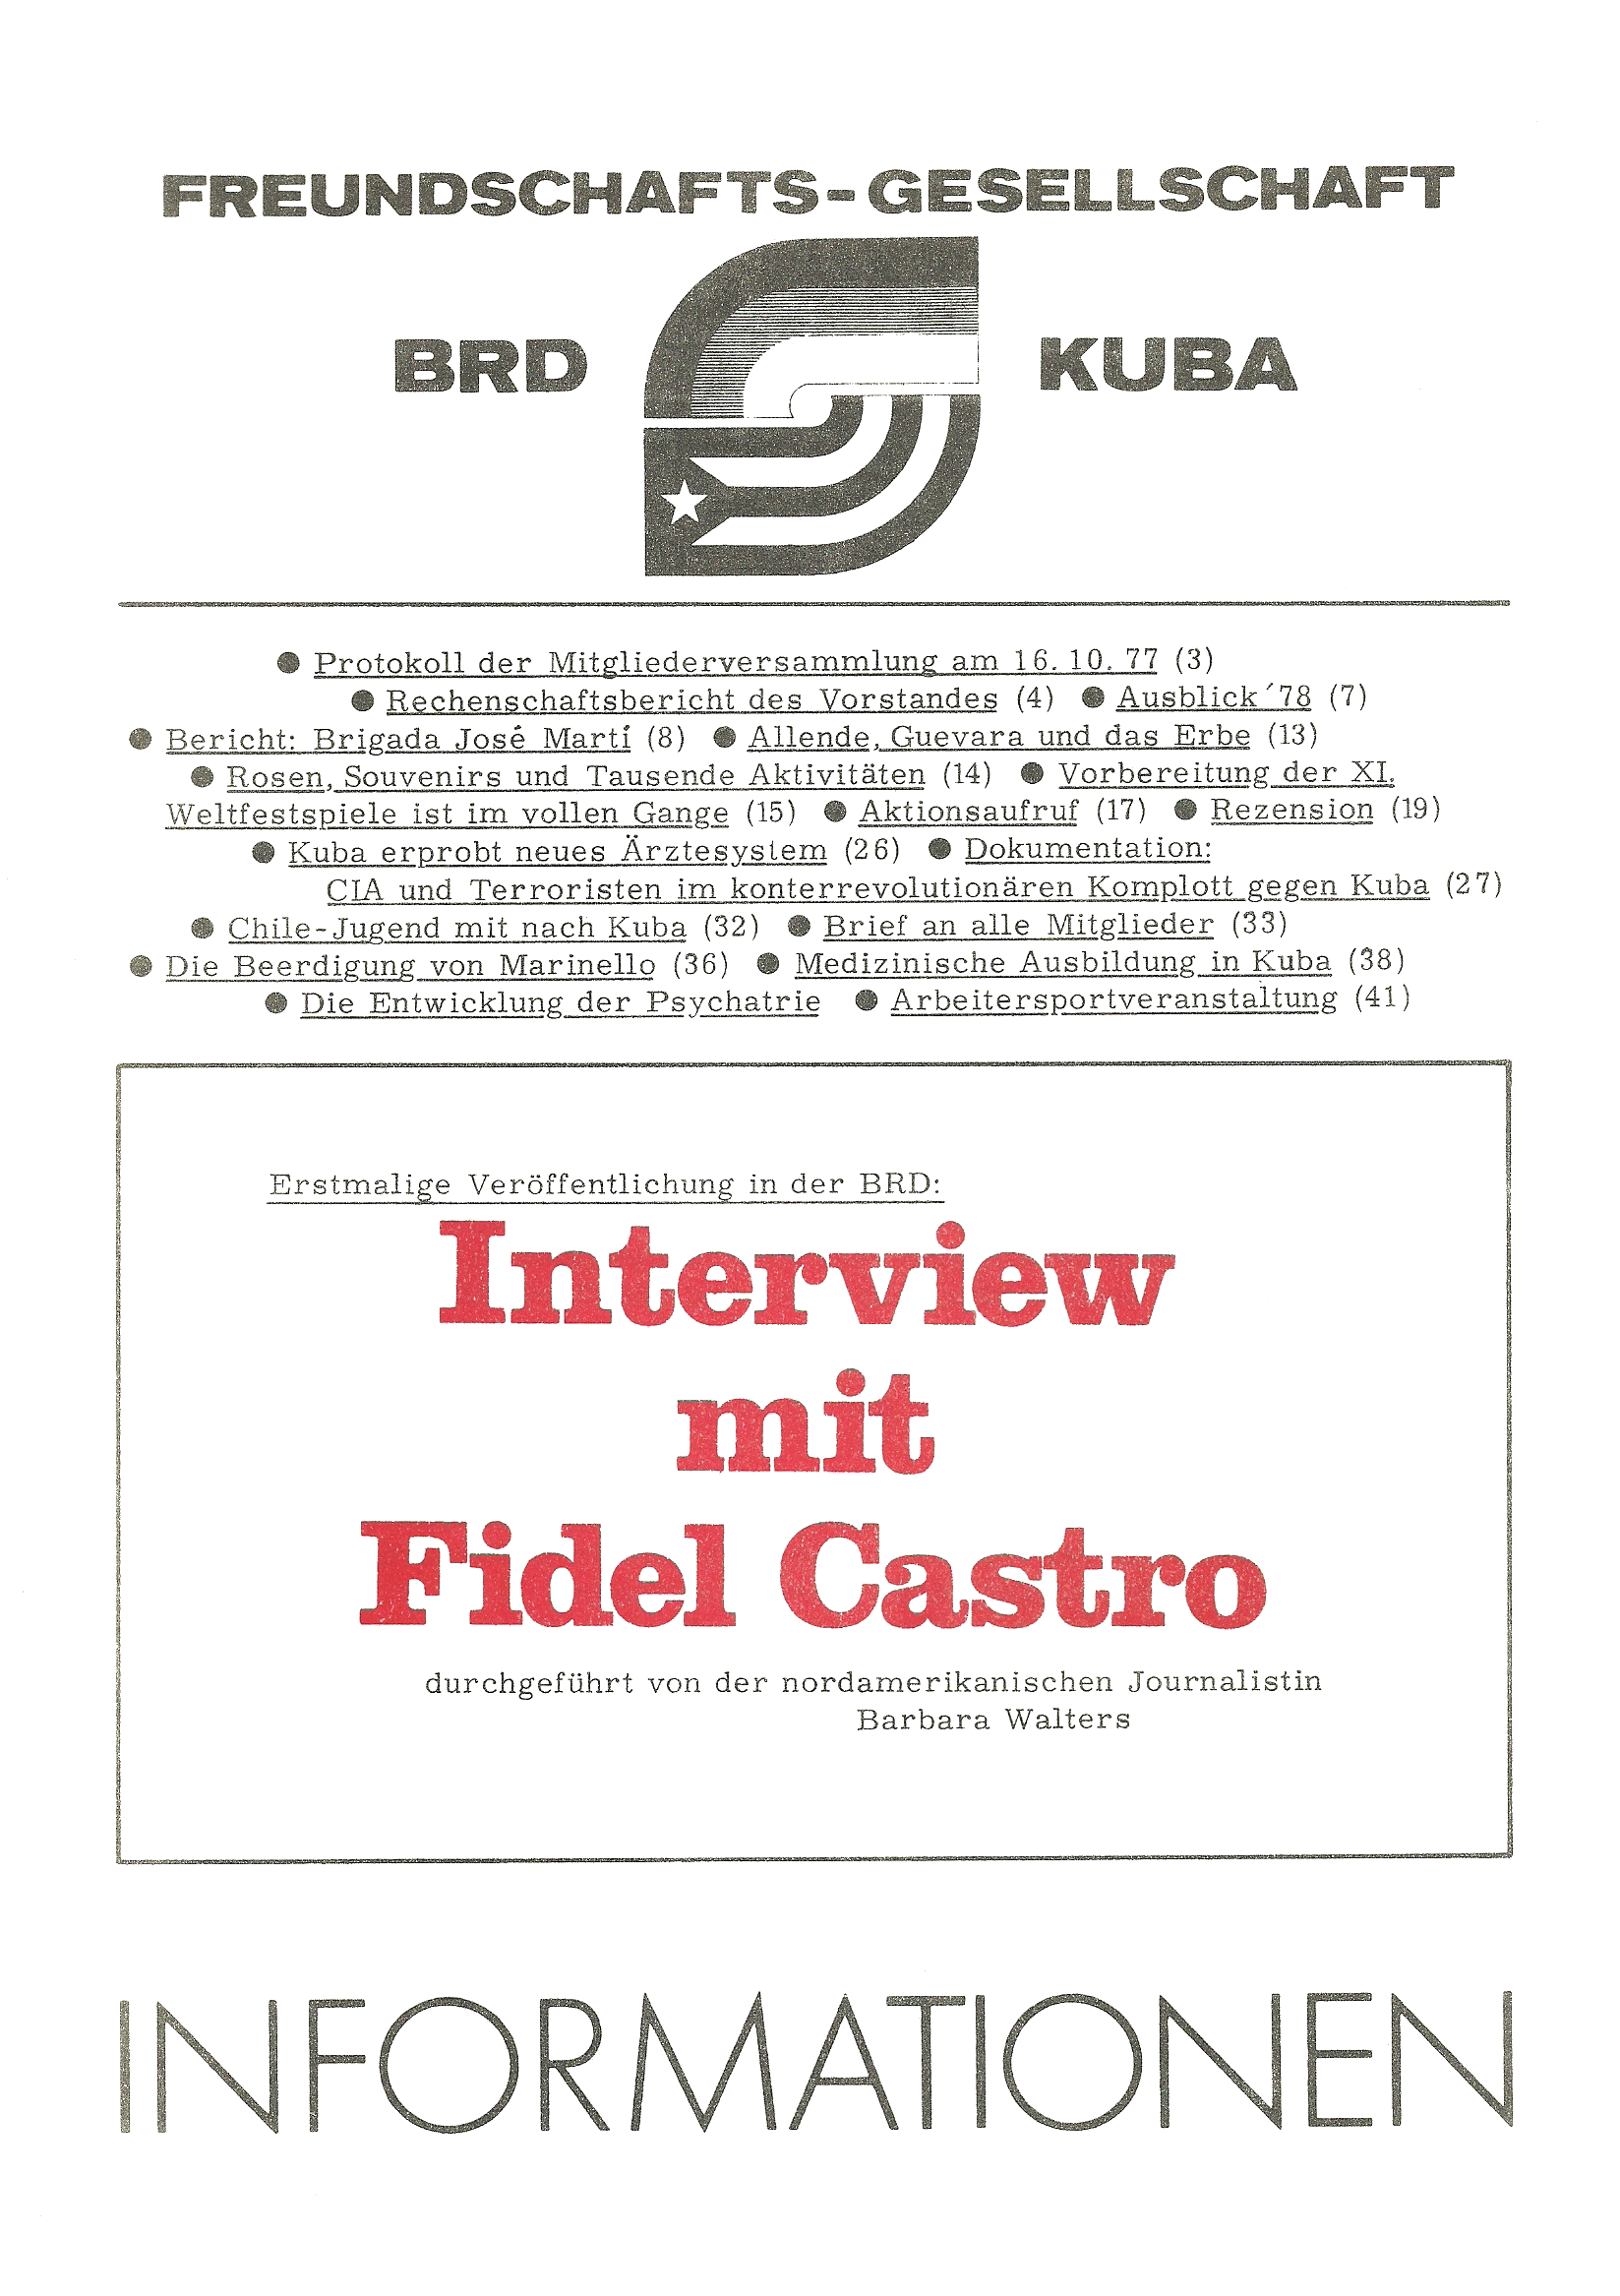 Freundschaftsgesellschaft BRD-Cuba - Informationsdienst 4-1977